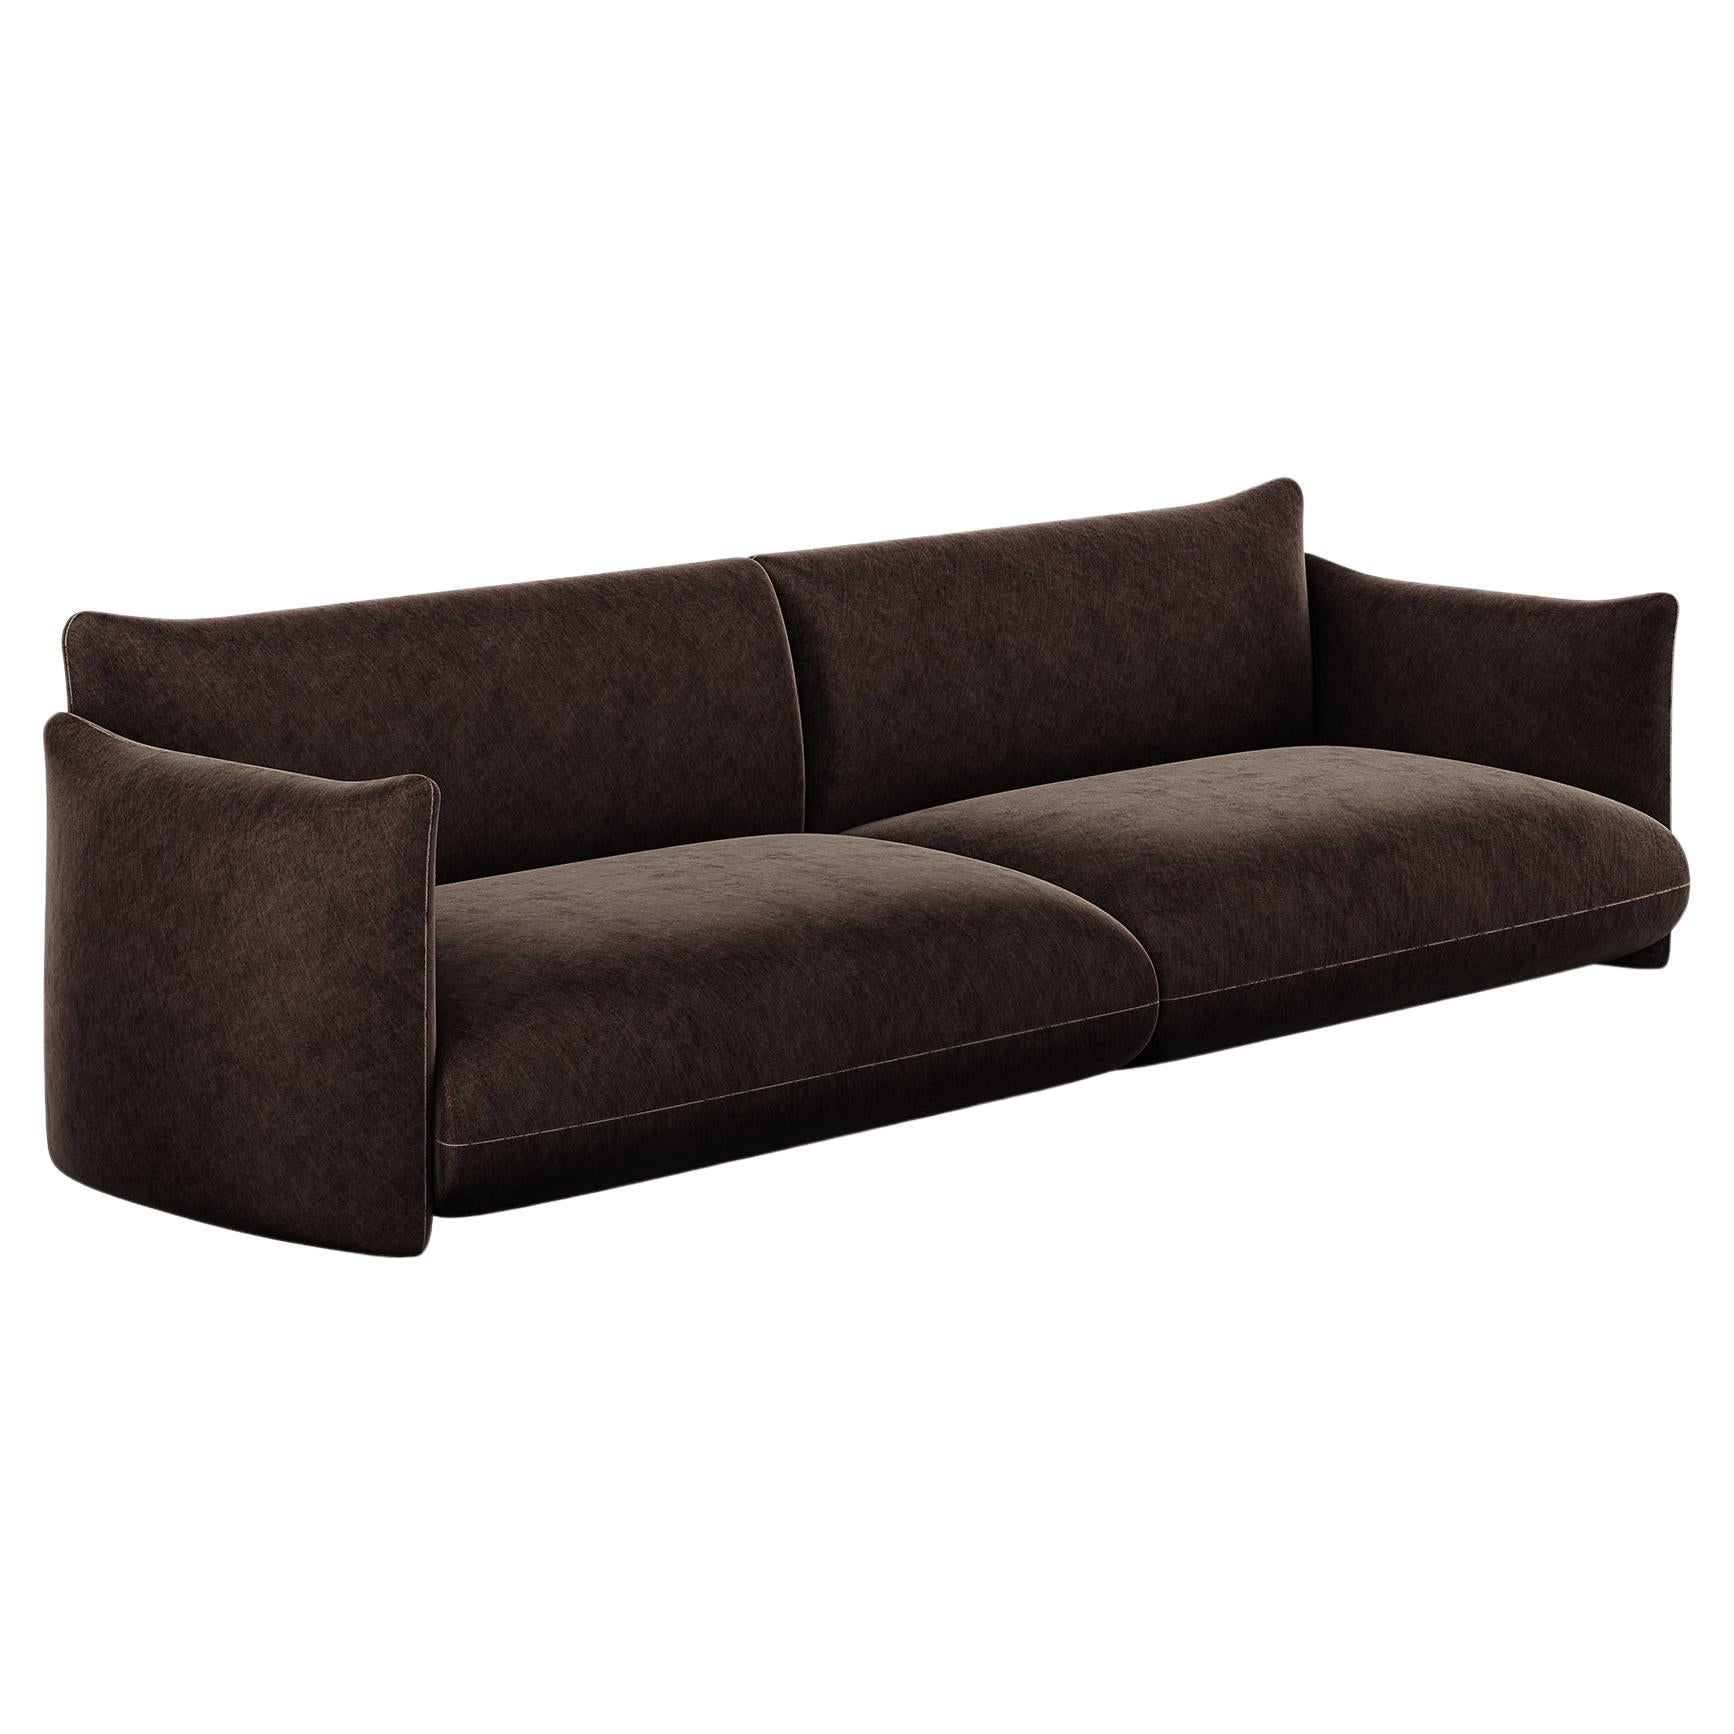 Minimalistisches, modernes, anpassbares Sofa, gepolstert mit dunkelbraunem schokoladenfarbenem Samt